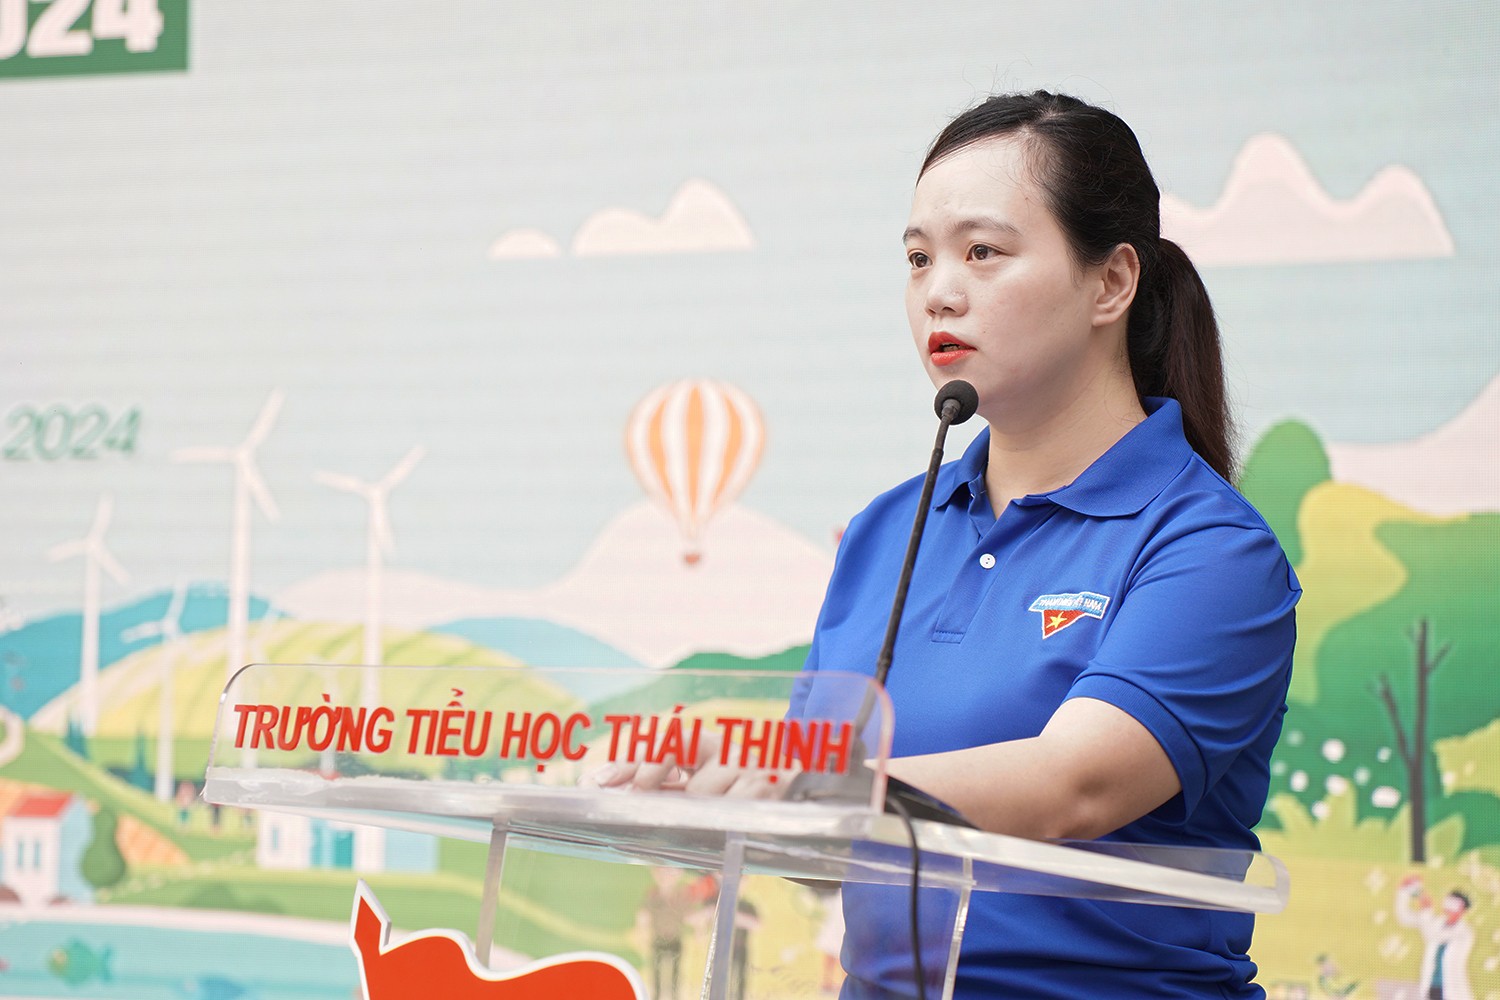 Đồng chí Nguyễn Thị Thanh Tâm - Bí thư Quận đoàn Đống Đa phát biểu khai mạc chương trình